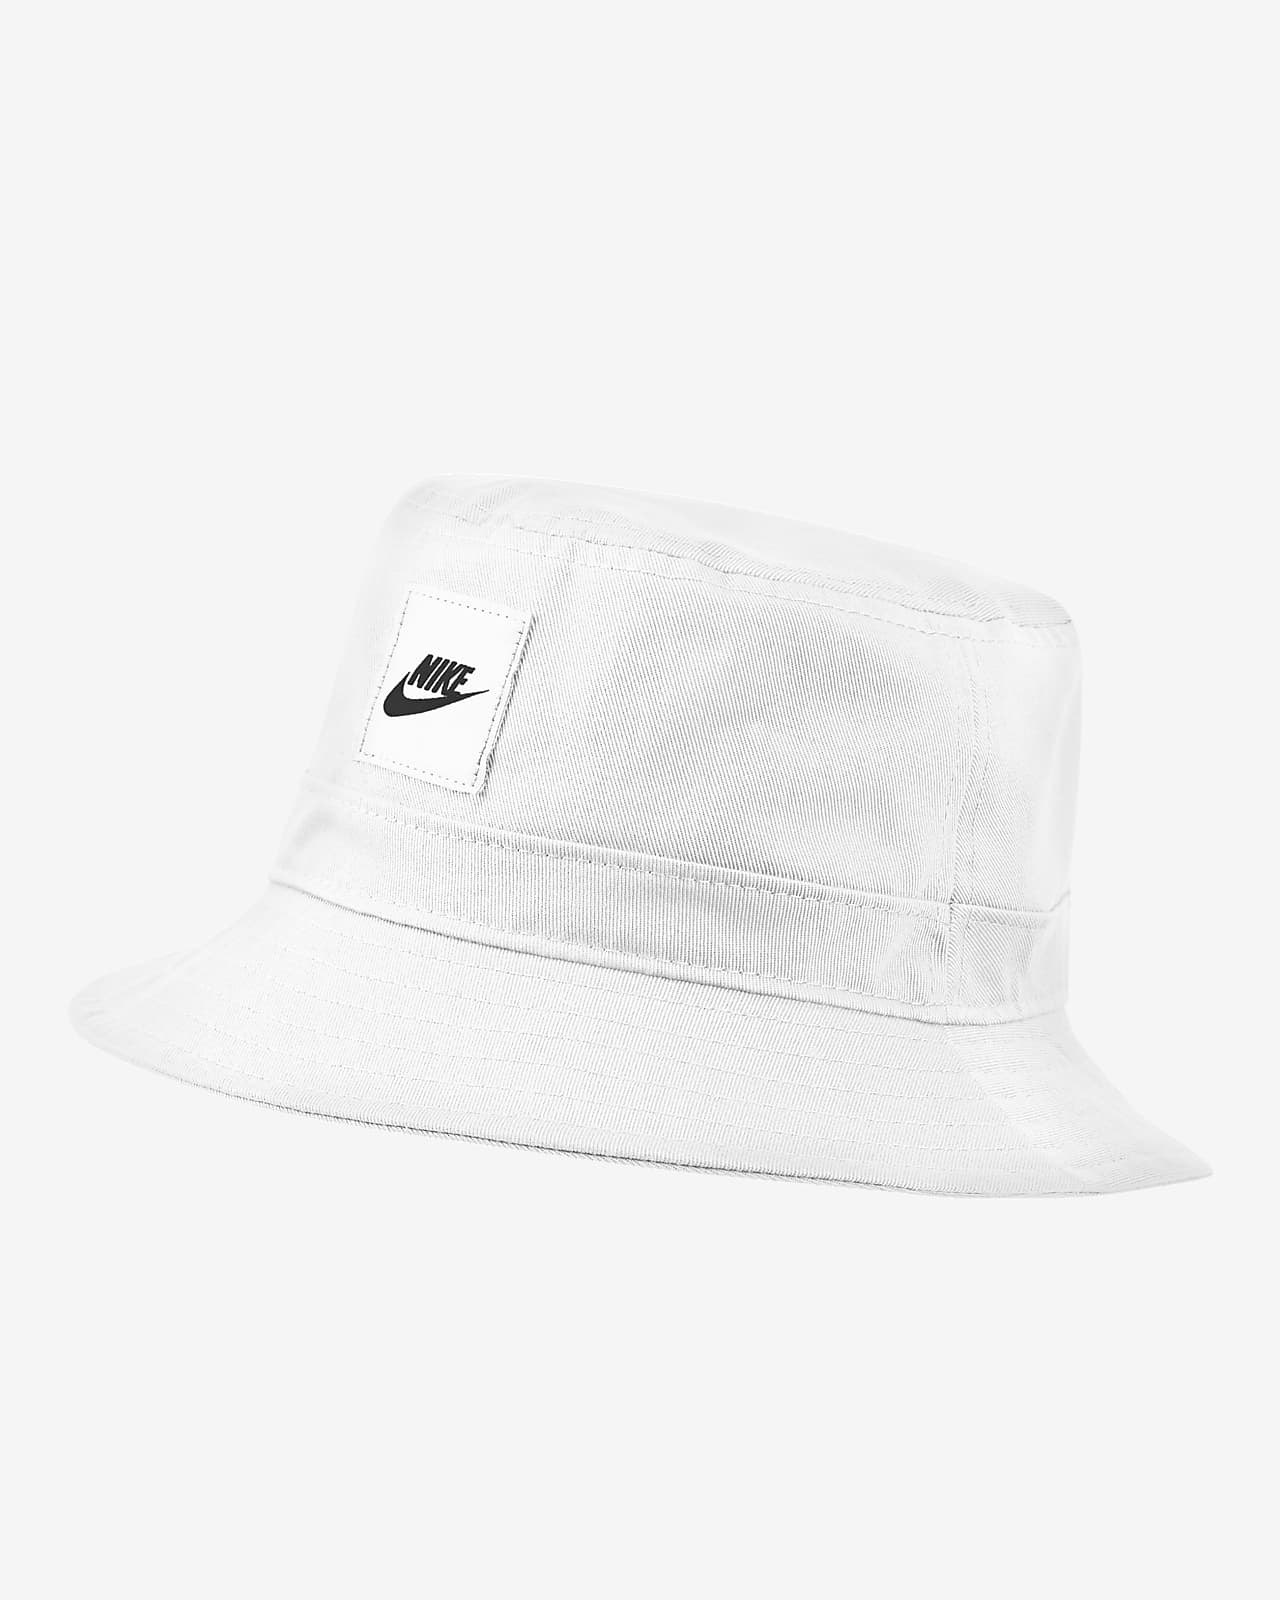 Nike Kids' Bucket Hat